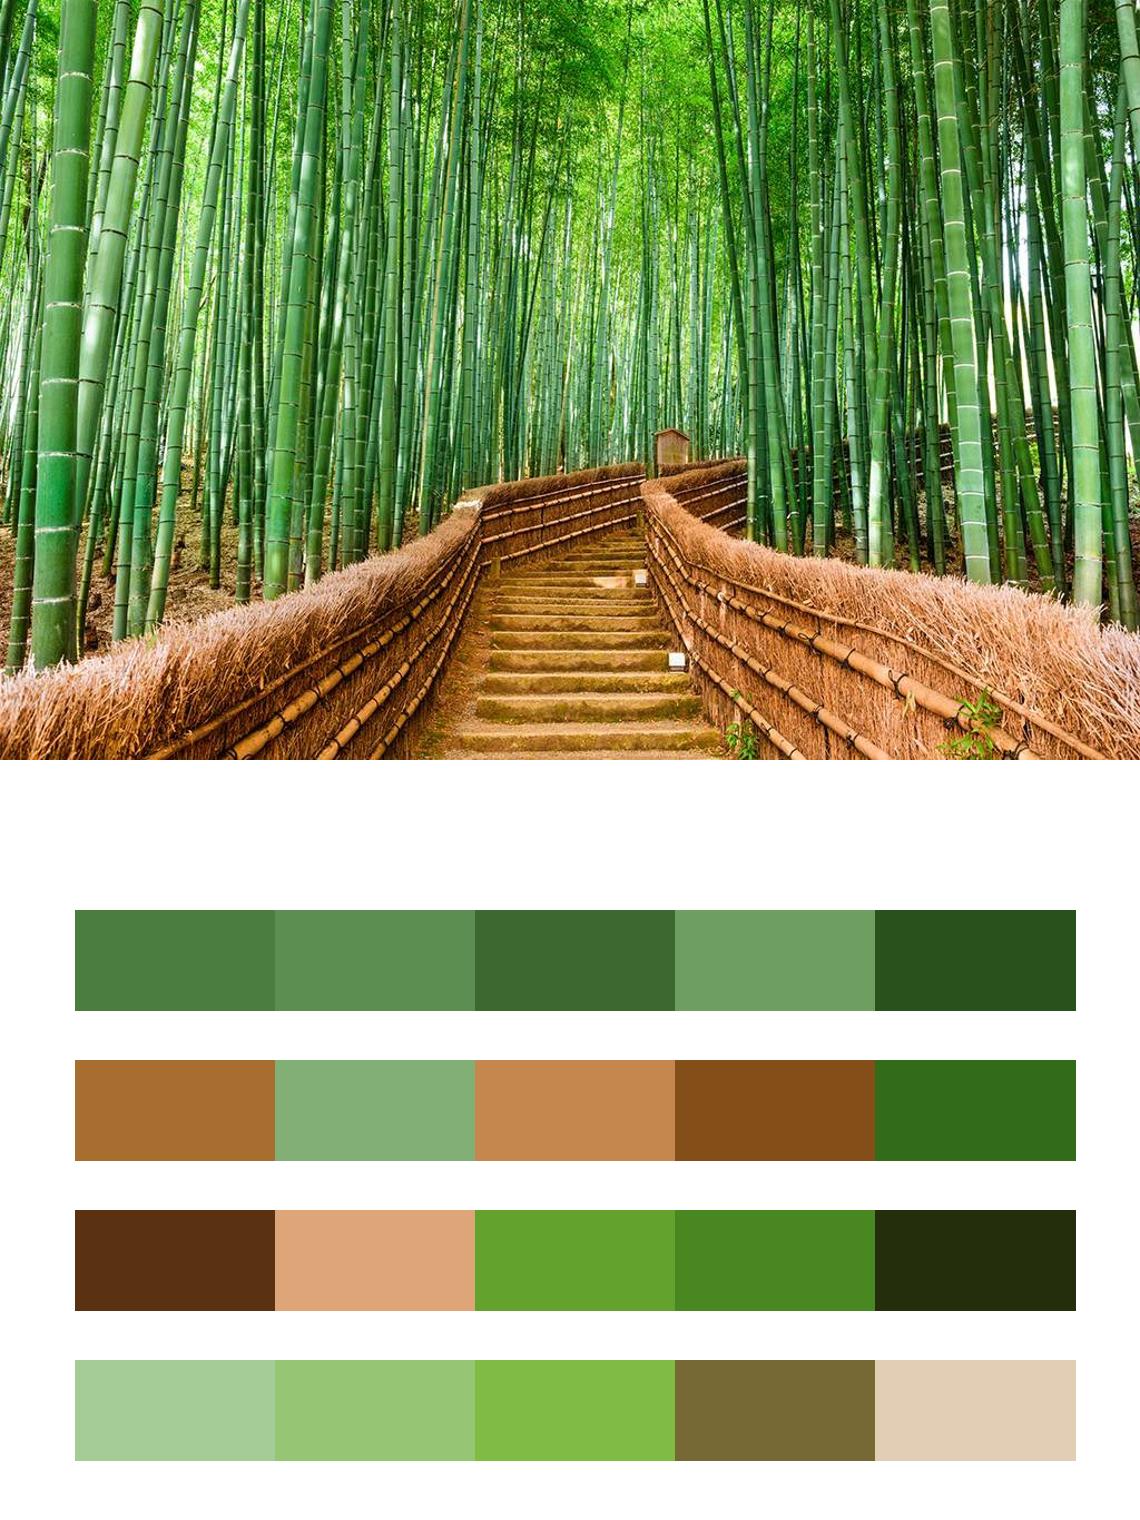 Бамбуковая аллея цвета